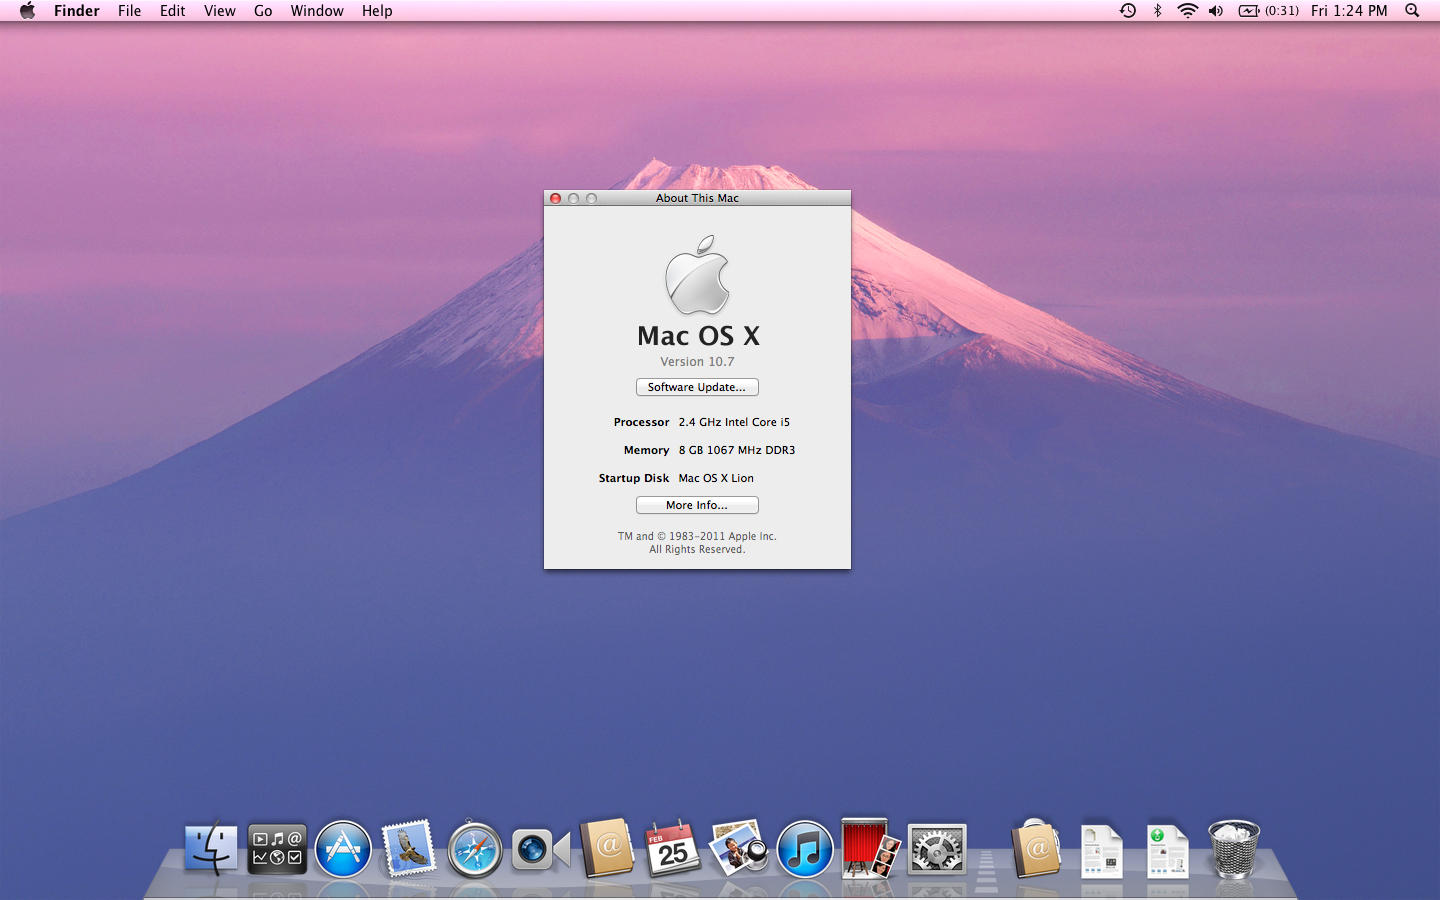 Hình nền Mac OS 9 đầy những đường nét tinh tế và đơn giản đem đến một cái nhìn thanh lịch và thời thượng cho máy tính của bạn. Hãy thưởng thức hình ảnh này để khám phá thế giới tràn đầy sự mềm mại của hệ điều hành cổ điển này.